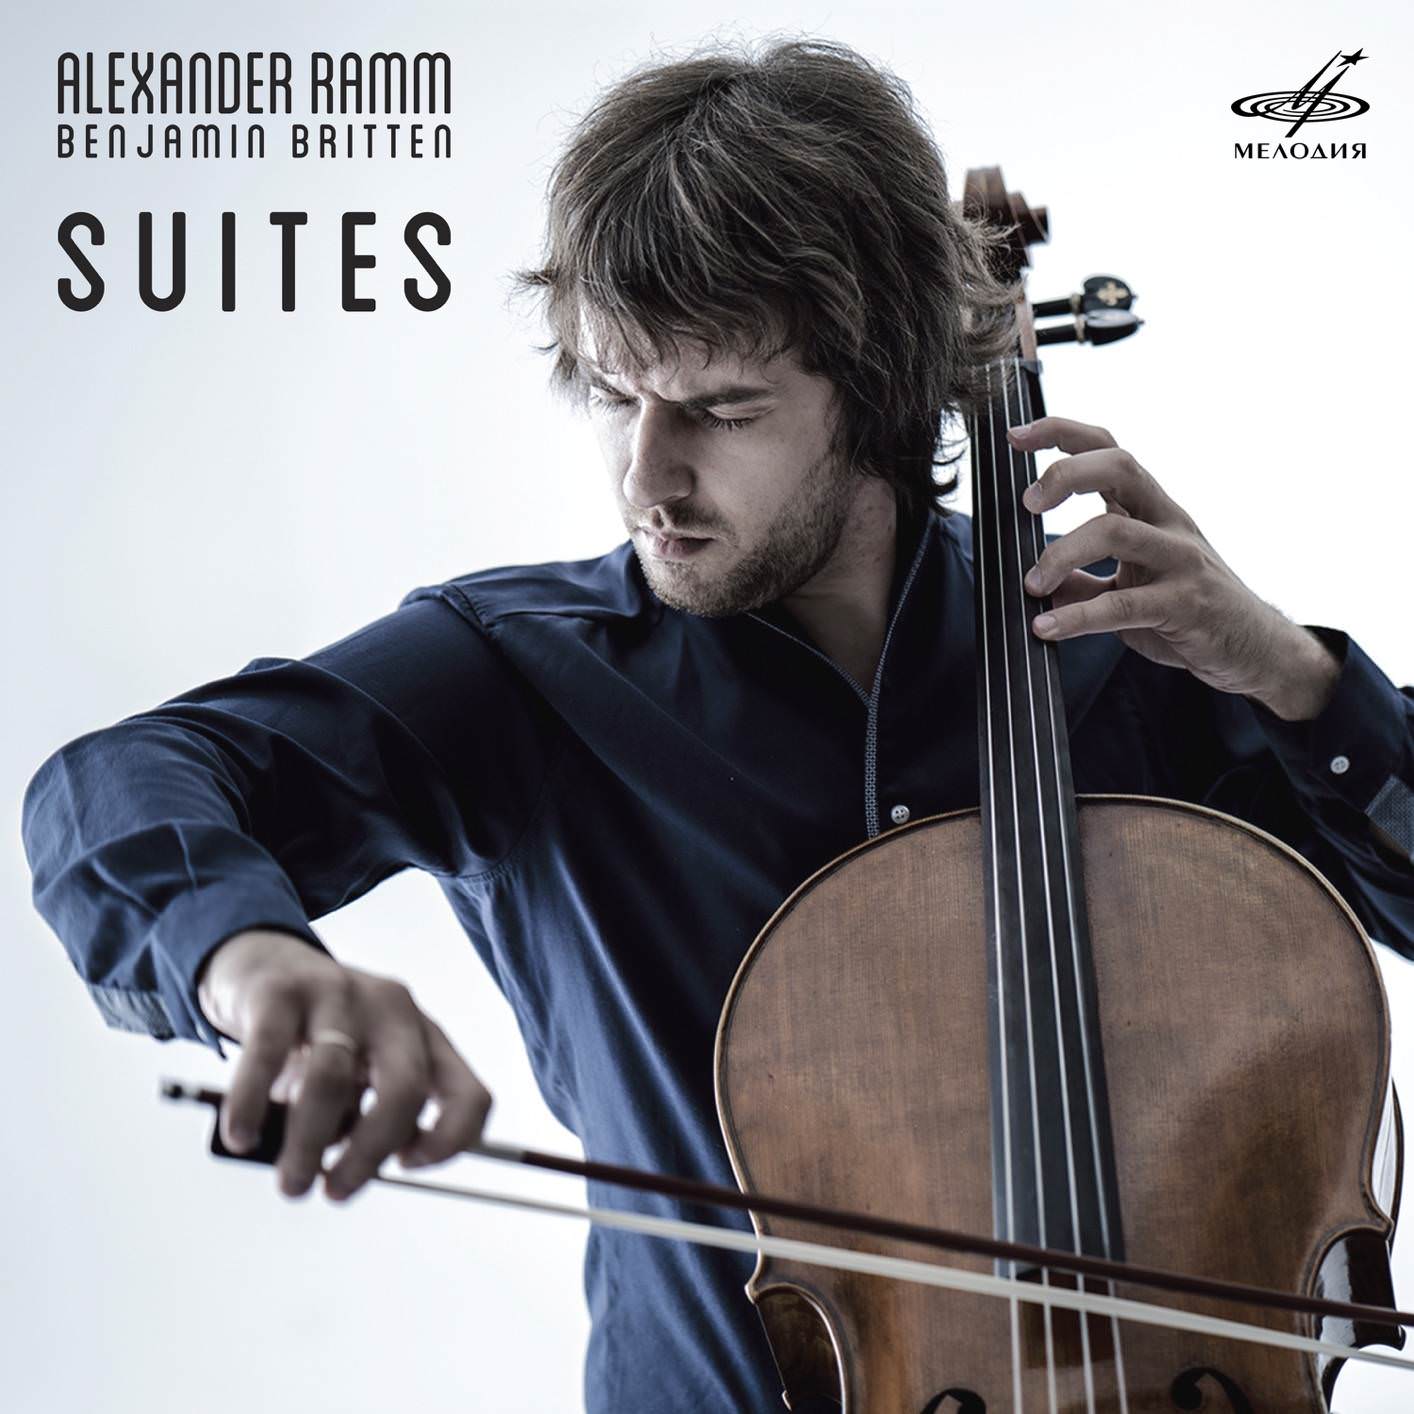 Alexander Ramm - Britten: Cello Suites (2018) [FLAC 24bit/96kHz]